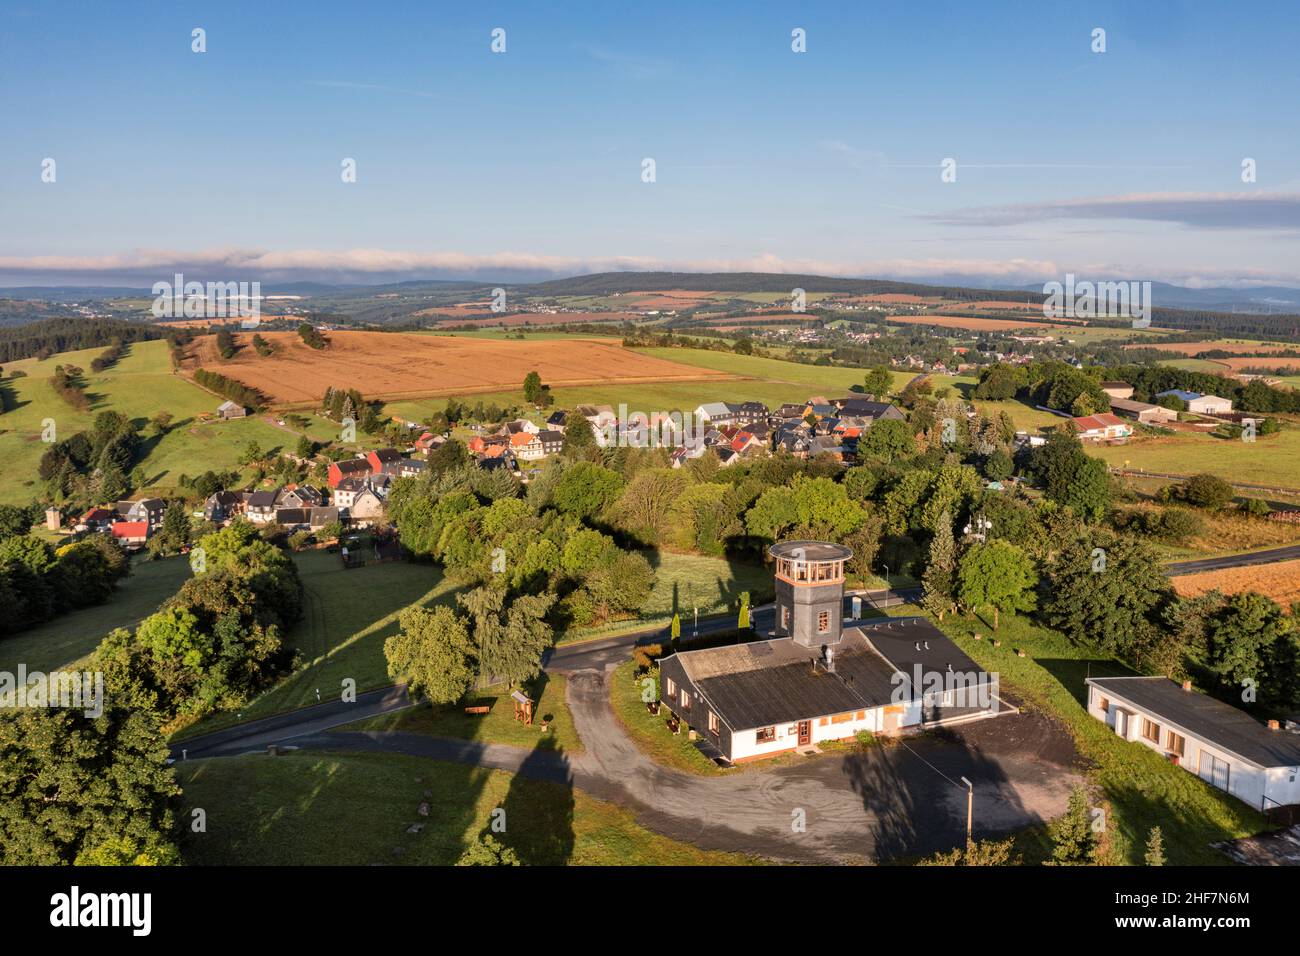 Deutschland, Thüringen, Königsee, Barigau, Aussichtsturm, Restaurant, Felder, Dorf im Hintergrund, Übersicht, Luftbild Stockfoto